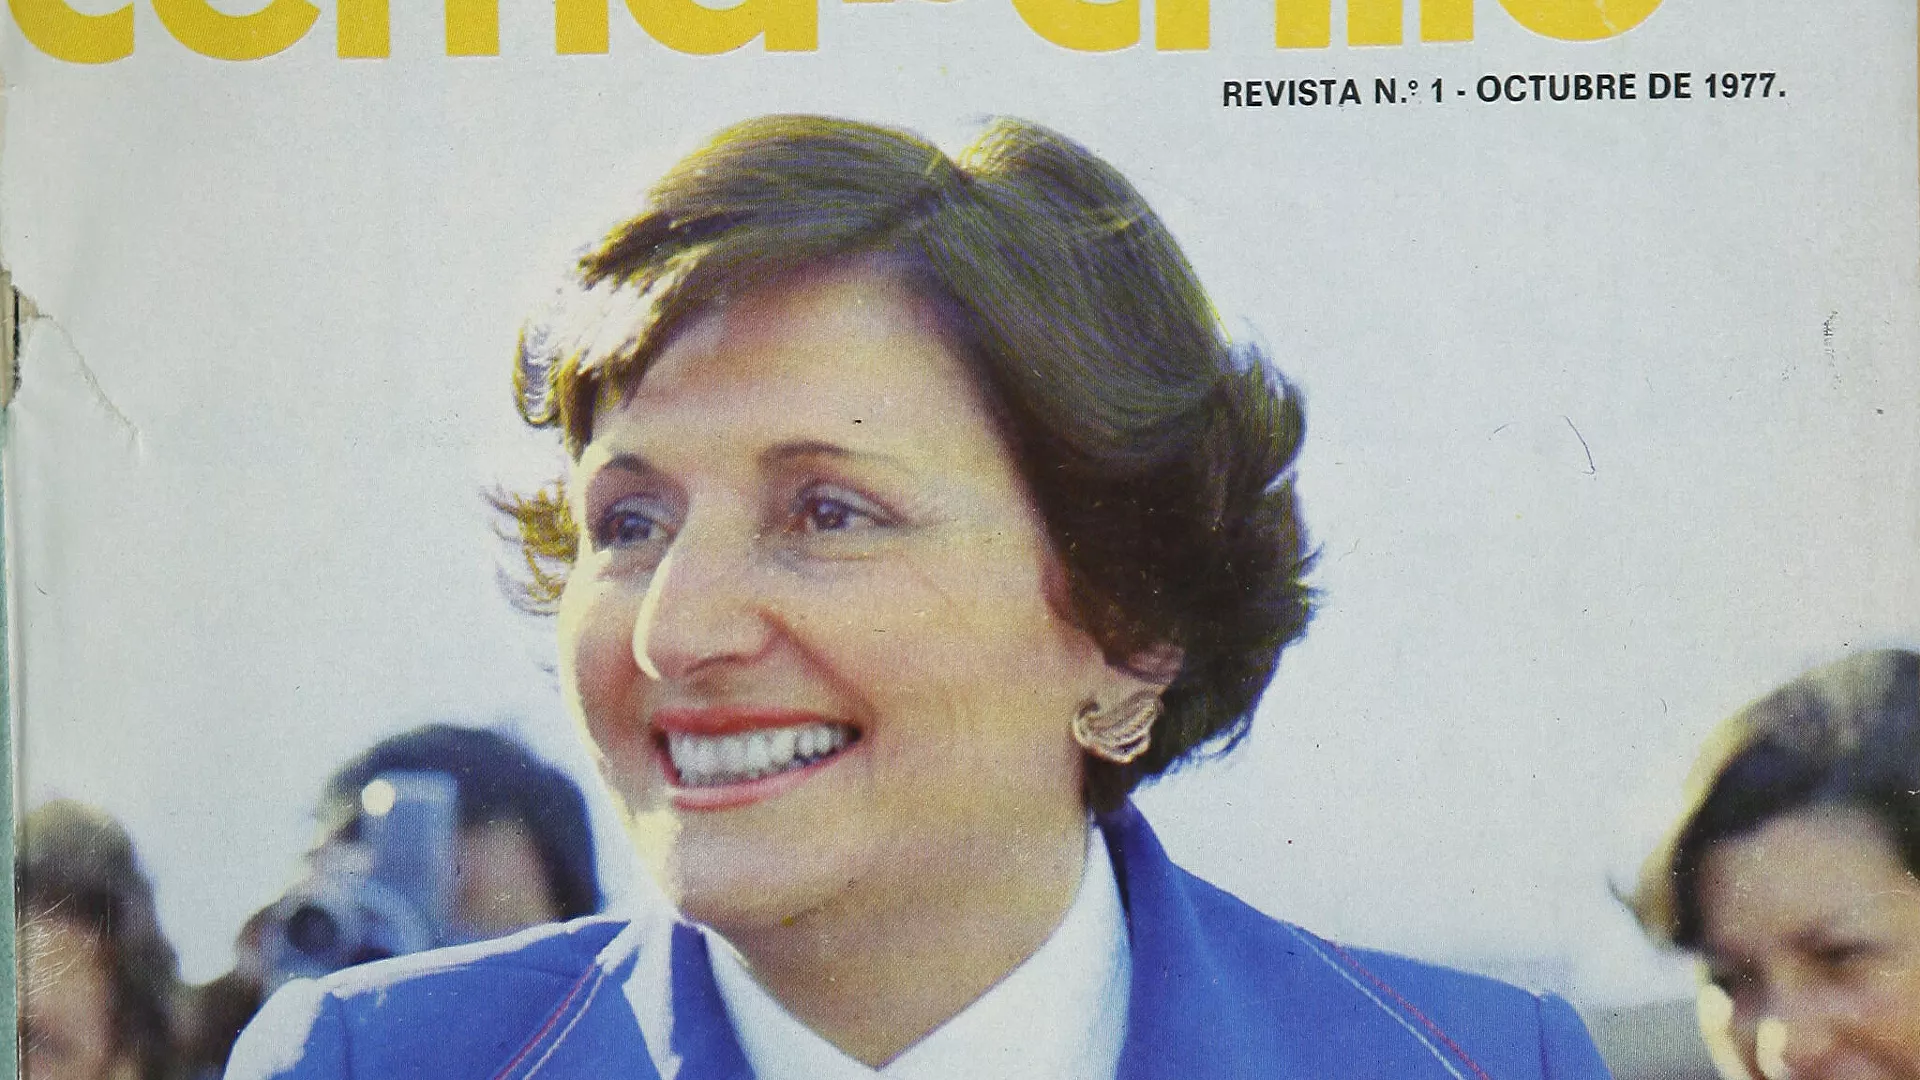  Lucía Hiriart de Pinochet: de primera dama de facto a estafadora